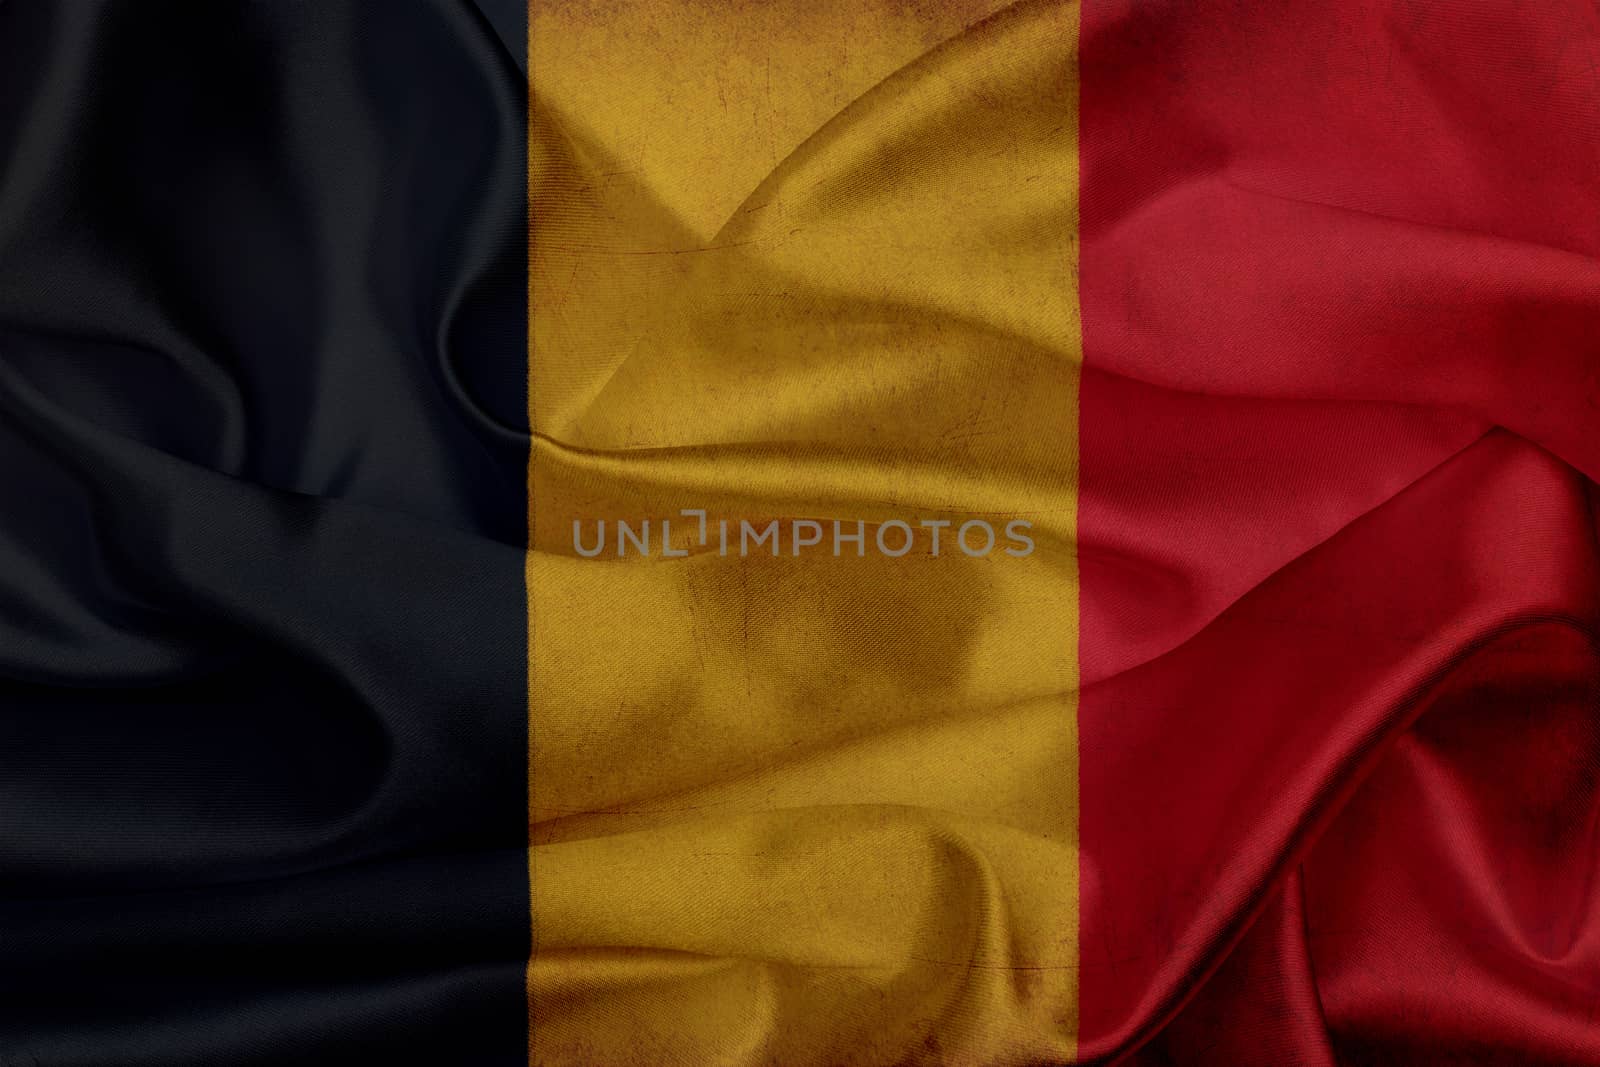 belgium grunge waving flag